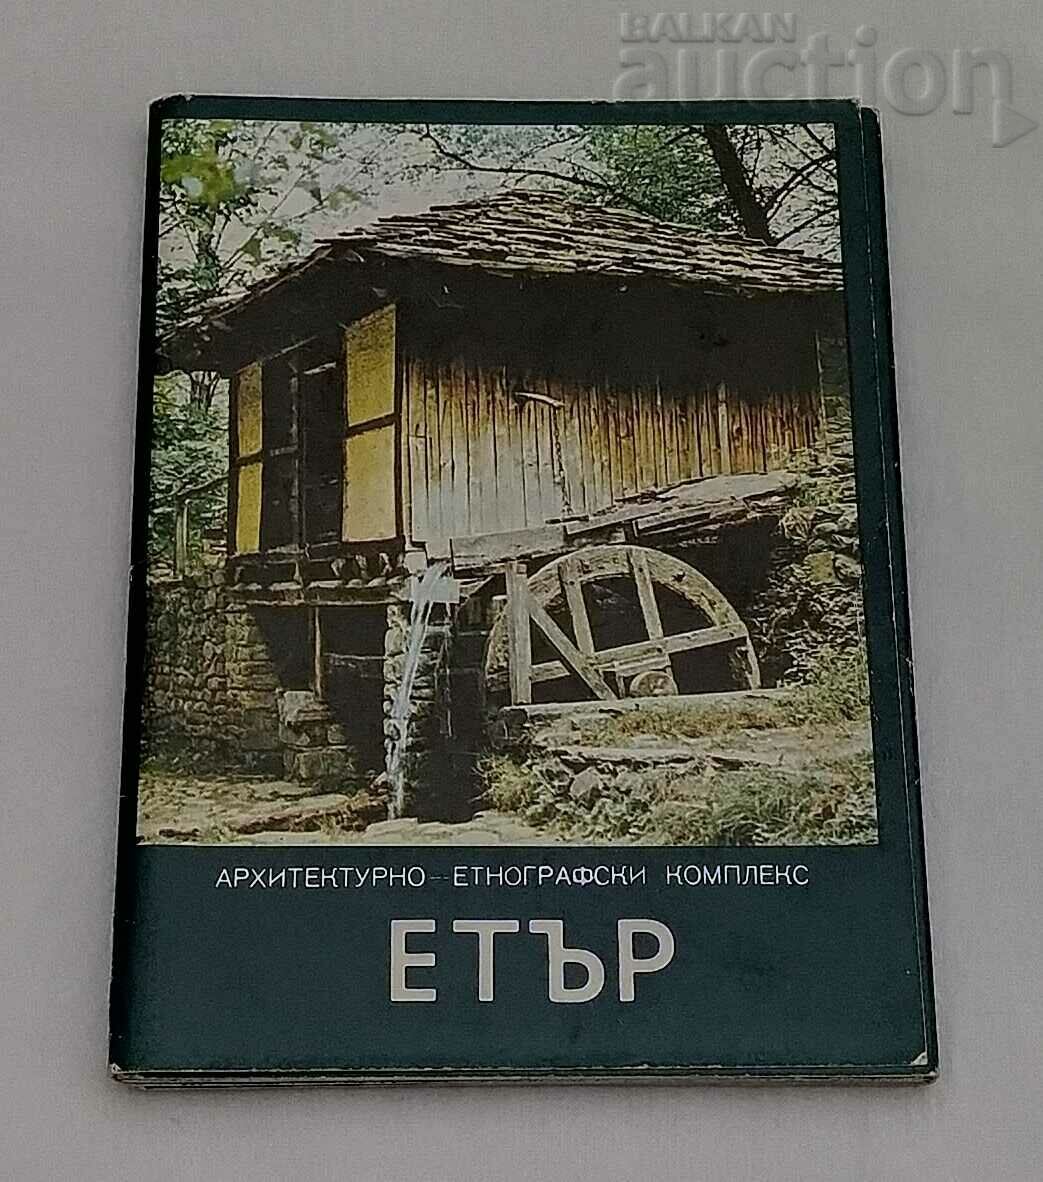 ETHER ETNOGRAFIE ARHITECTURA SET 15 NUMERE P.K. 1980